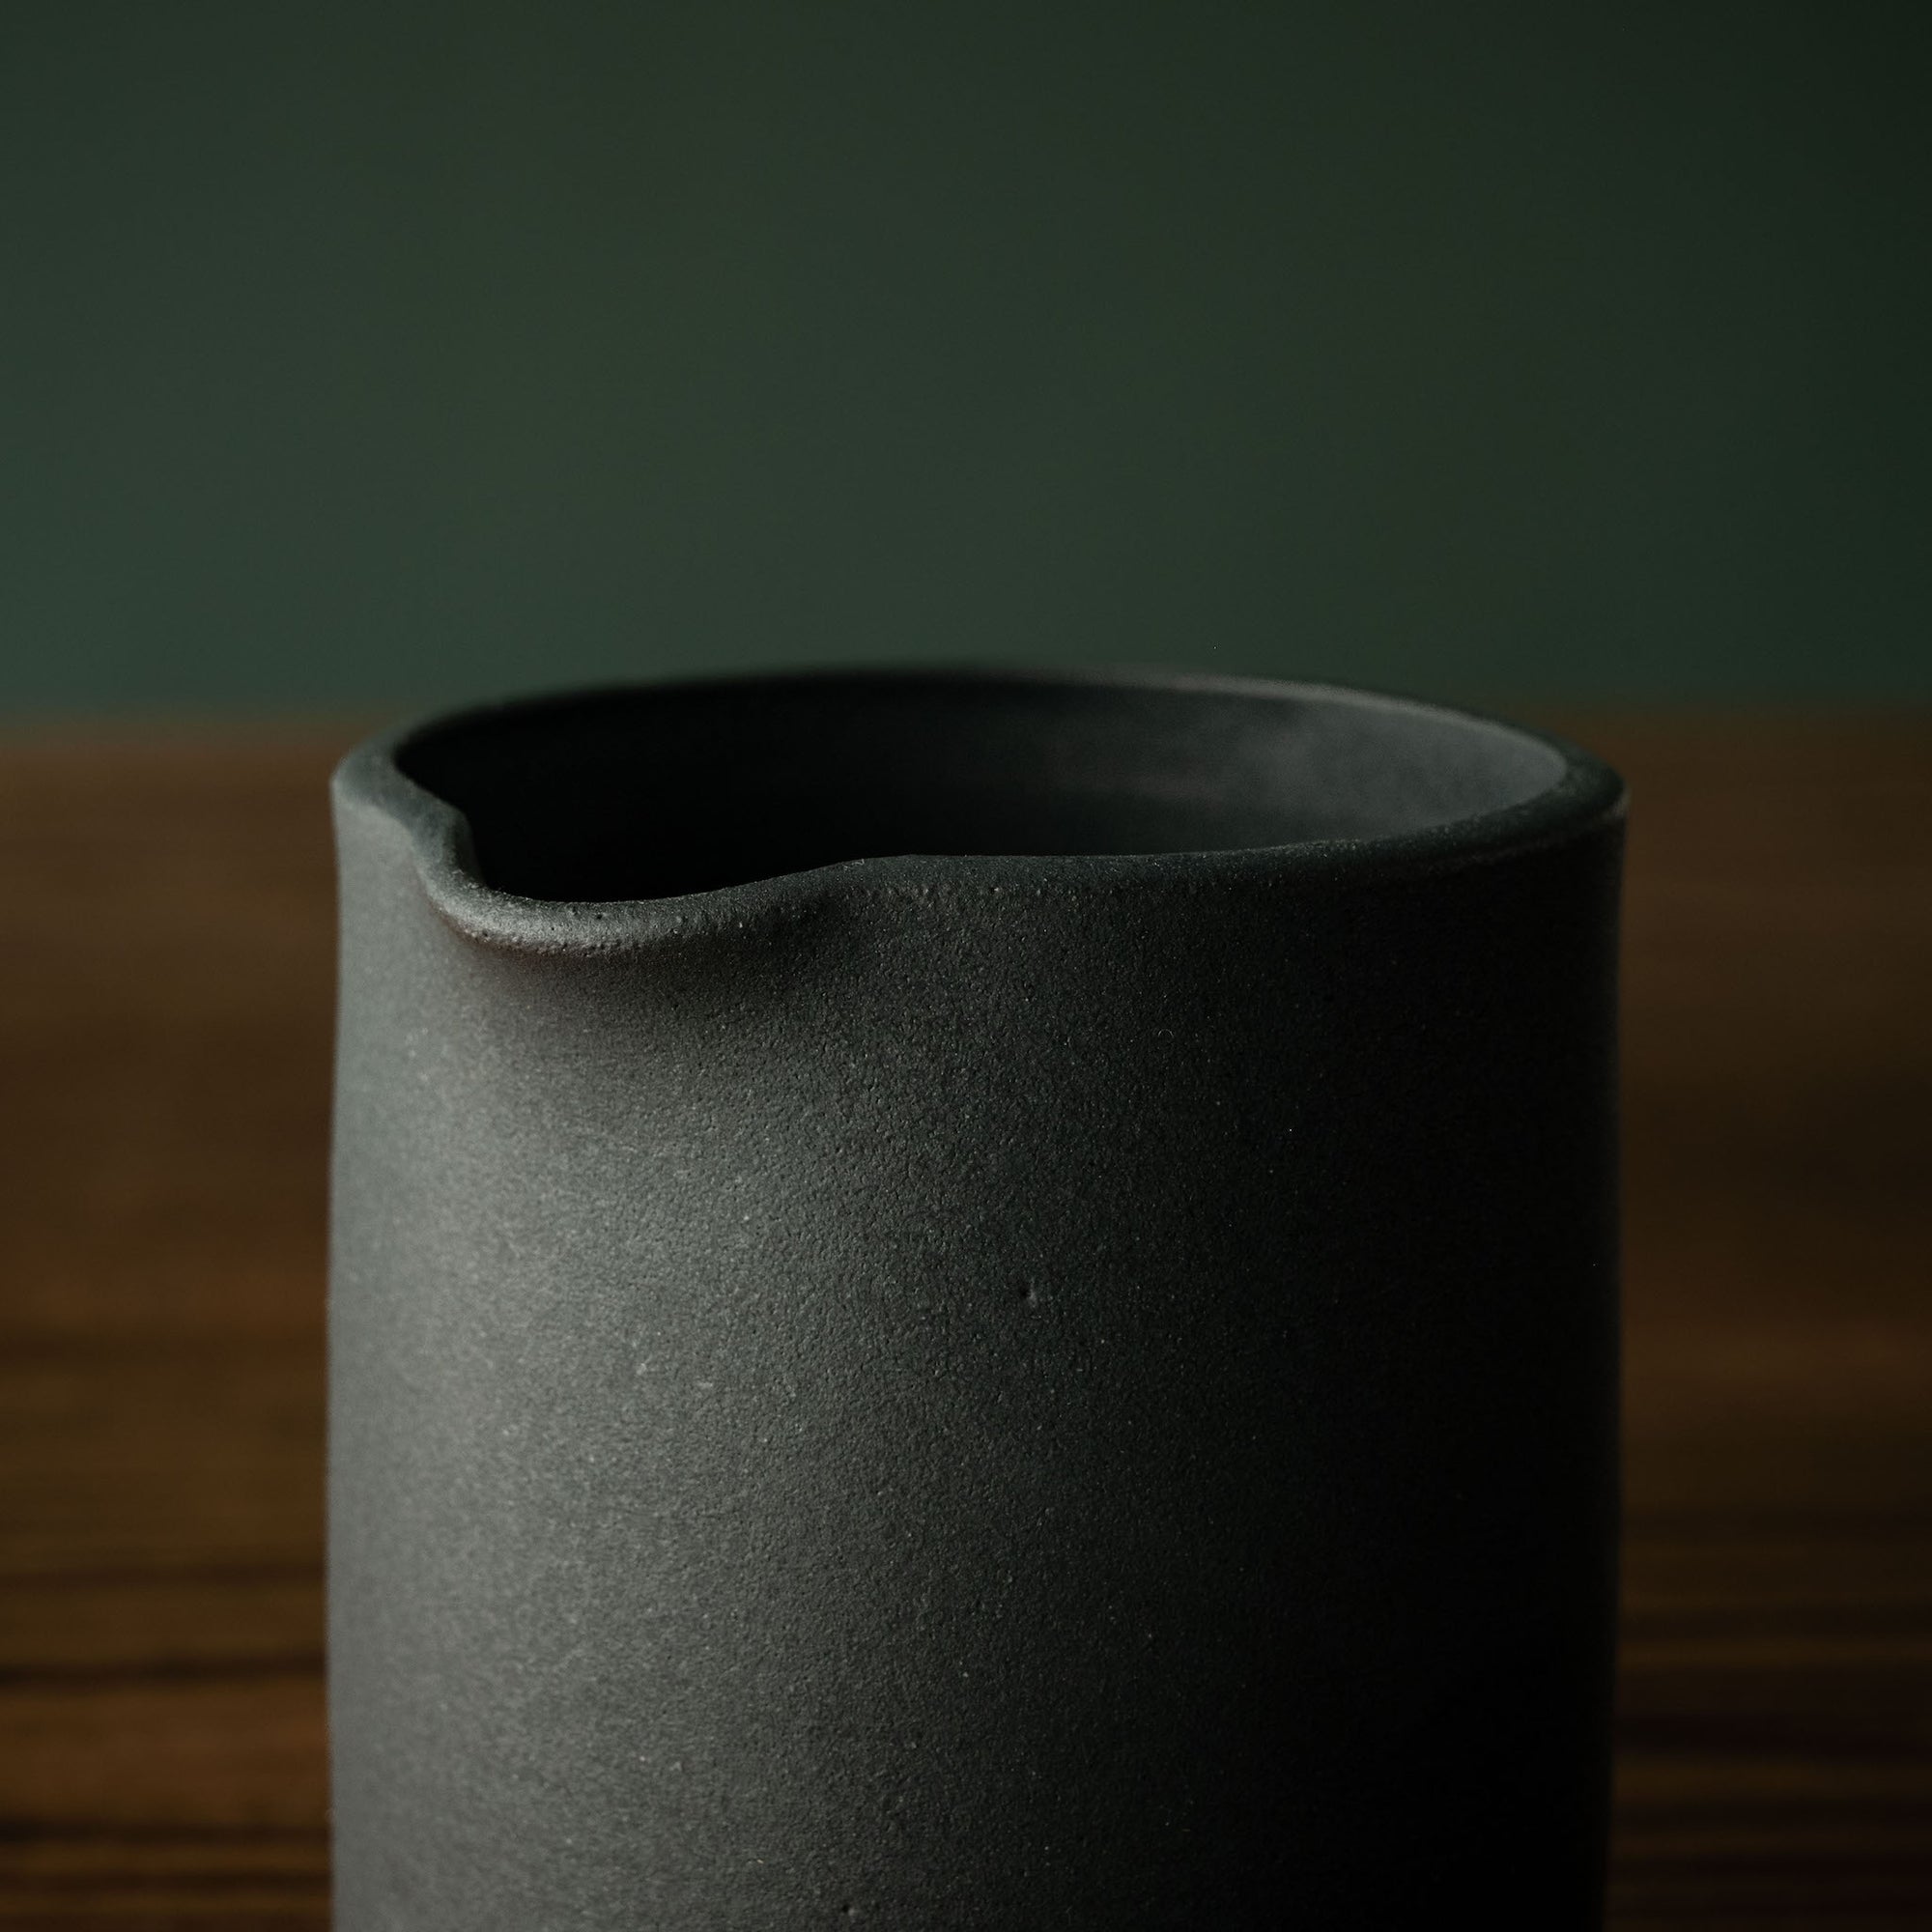 Carrick Ceramics black stoneware pourer close up